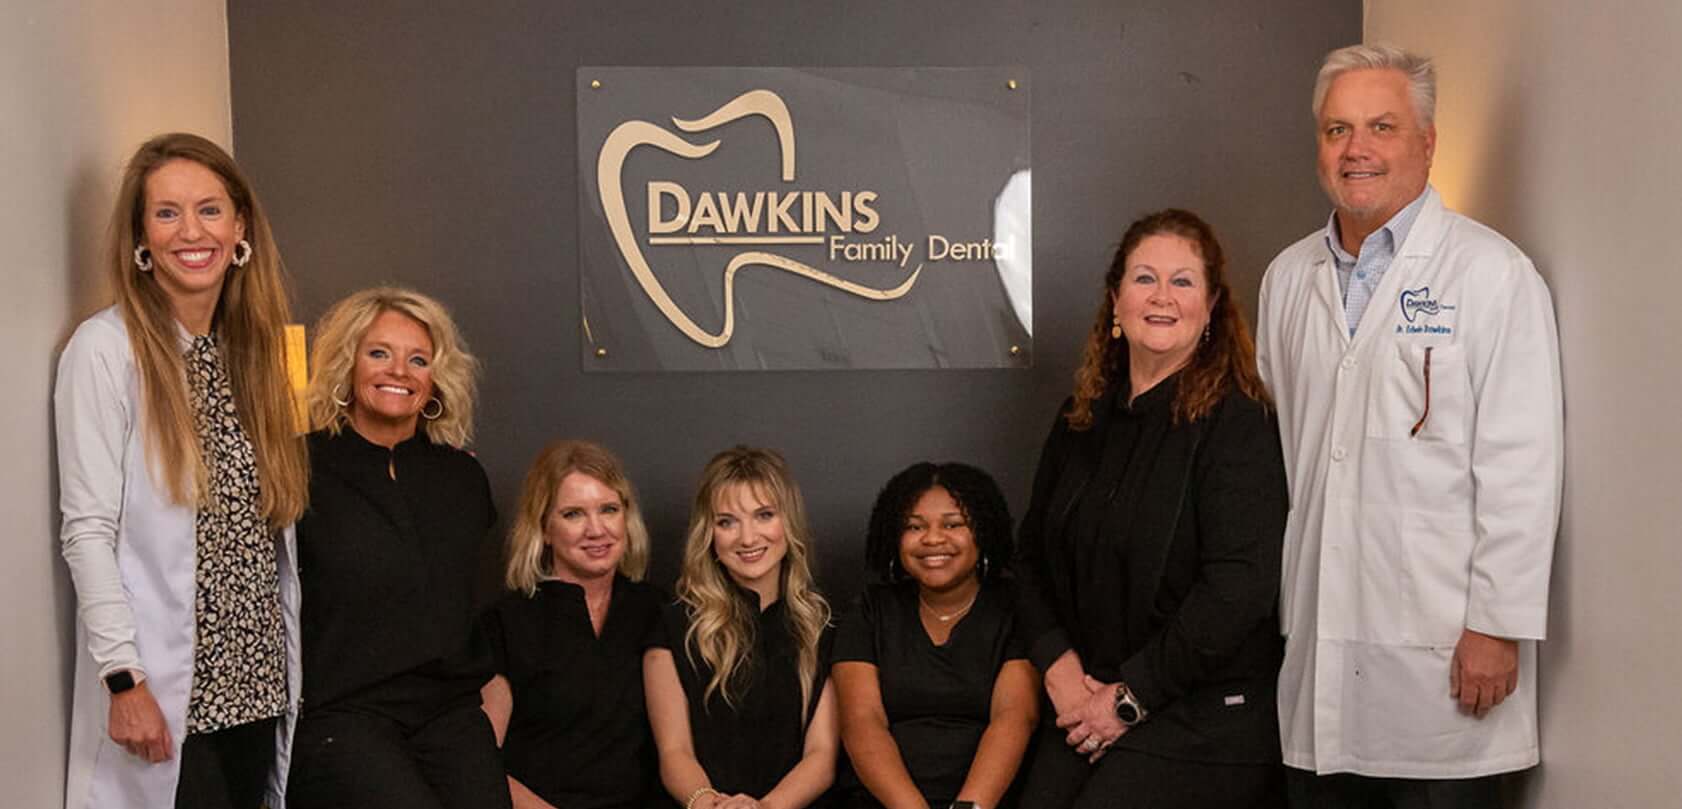 Dawkins Family Dental staff